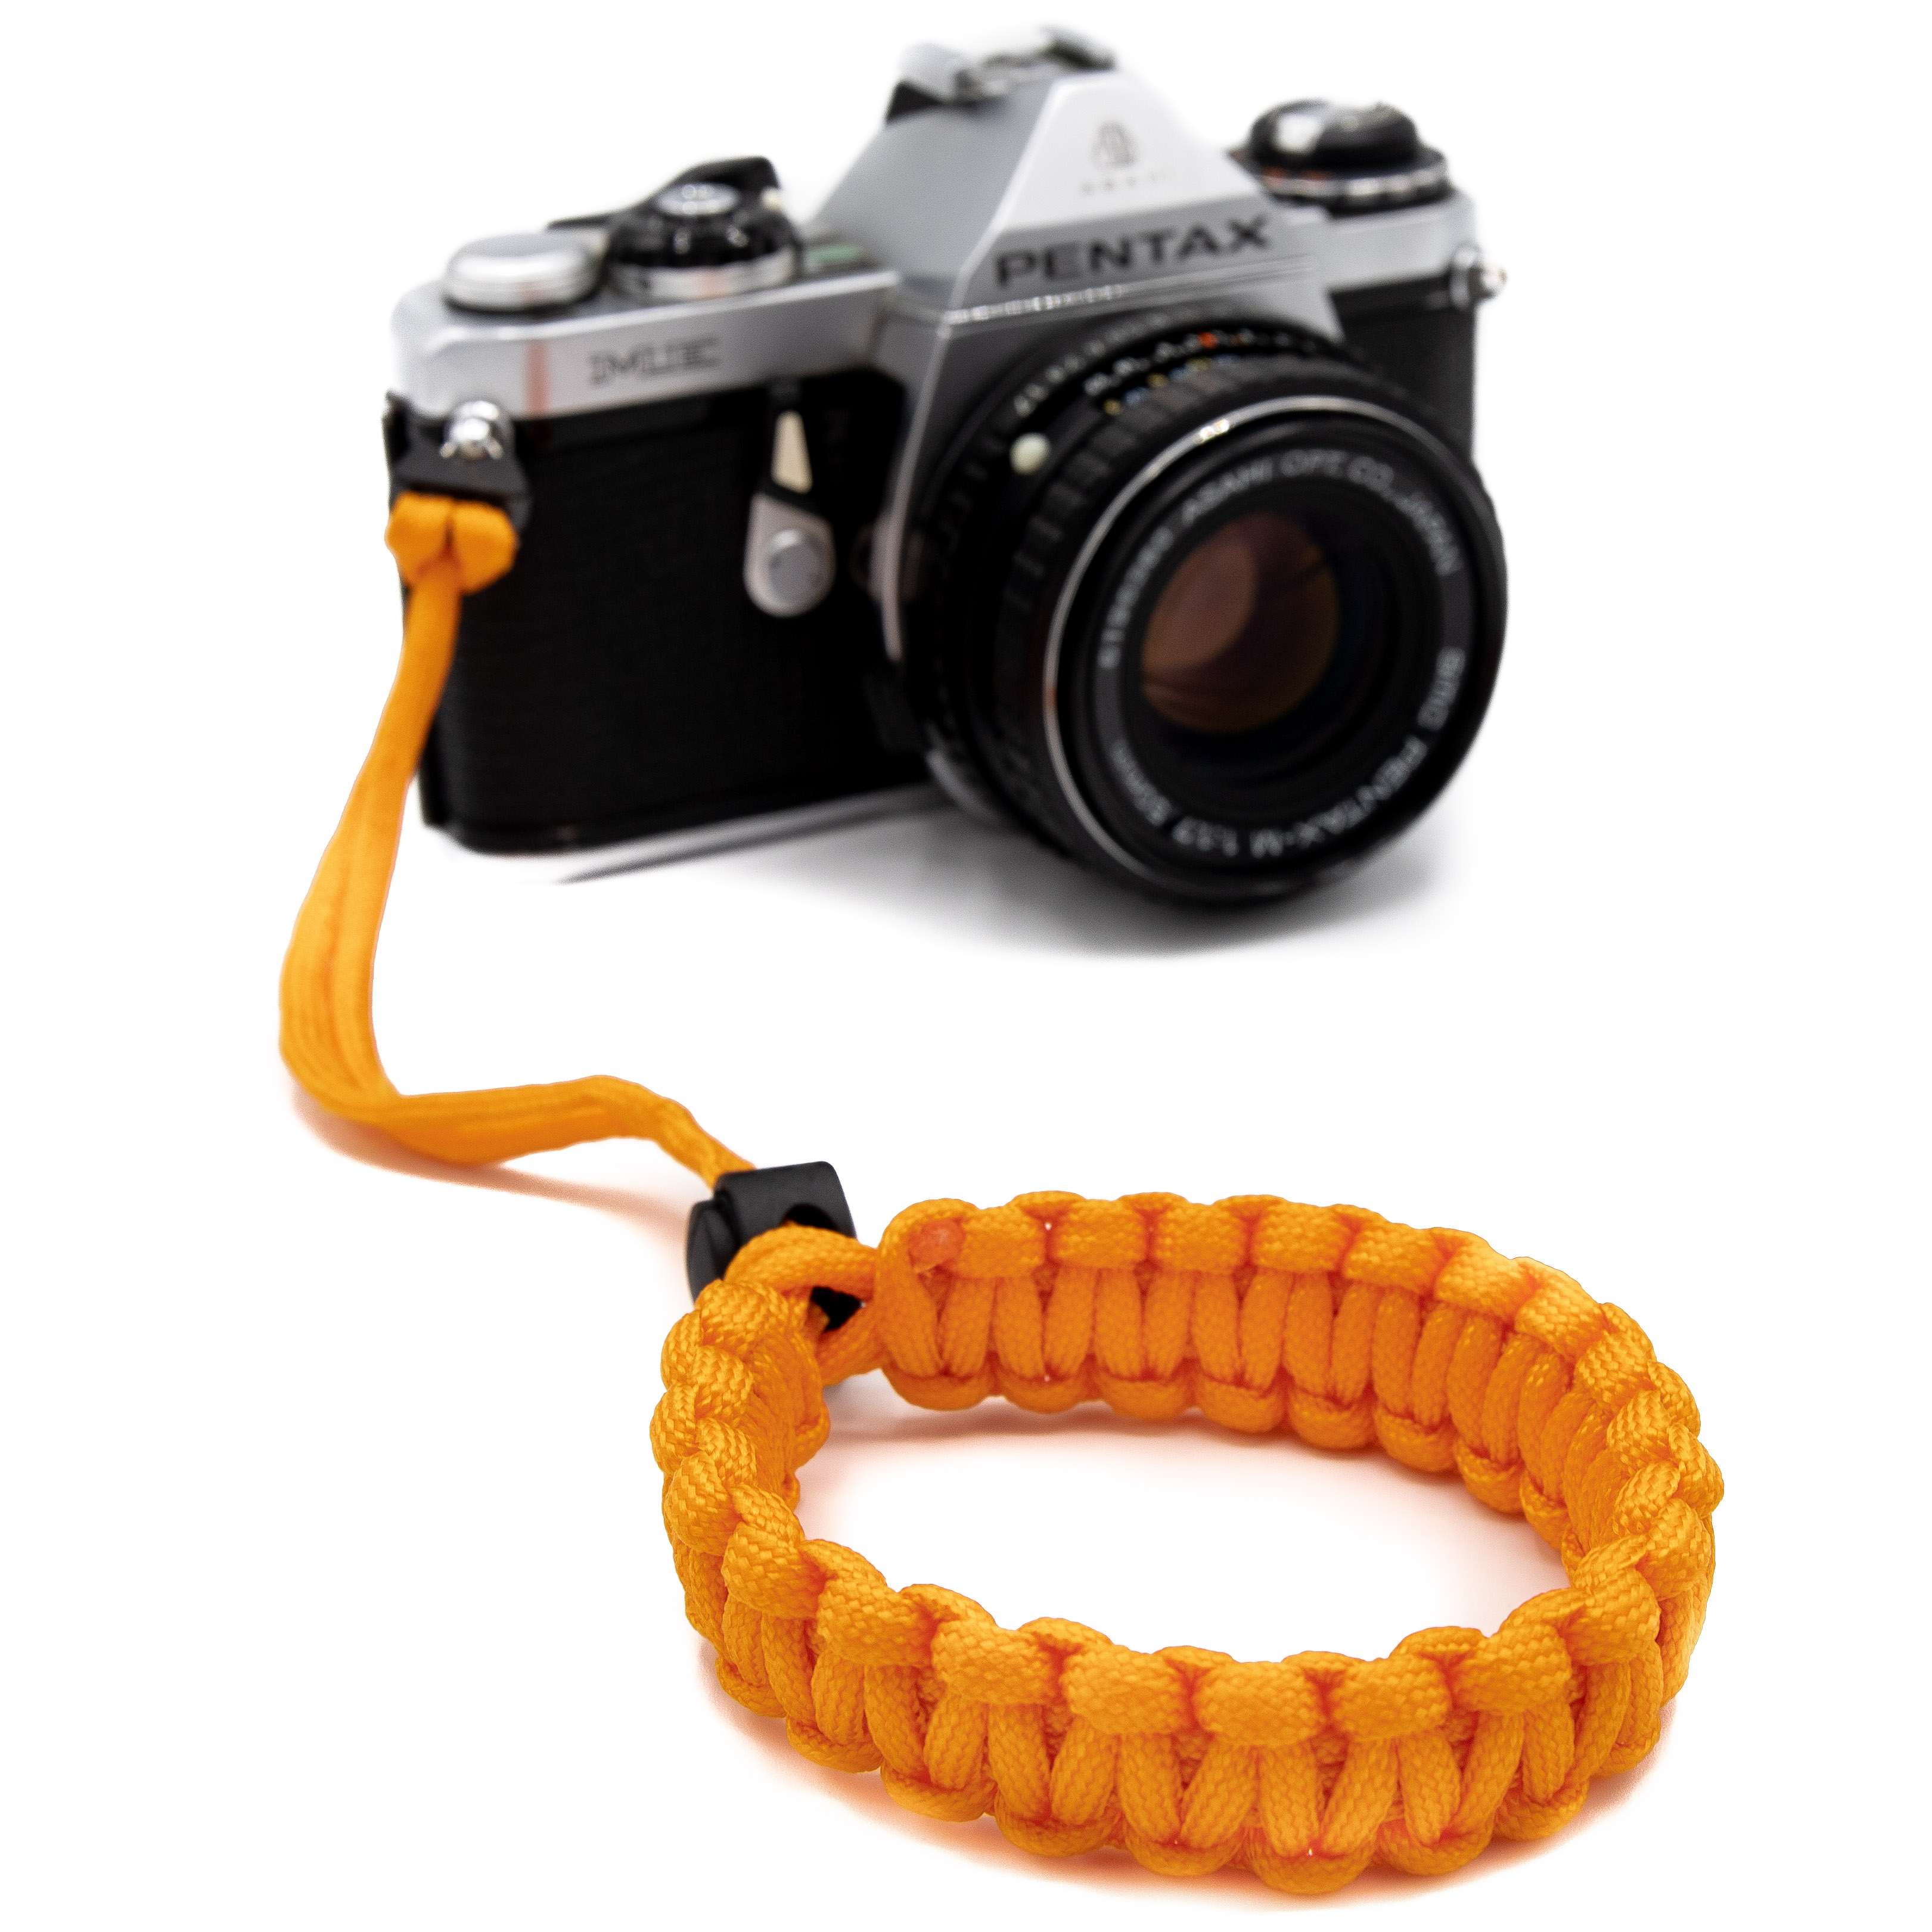 Handgelenk, Orange Kamera Paracord Handschlaufe, aus LENS-AID fürs Kamera Handschlaufe